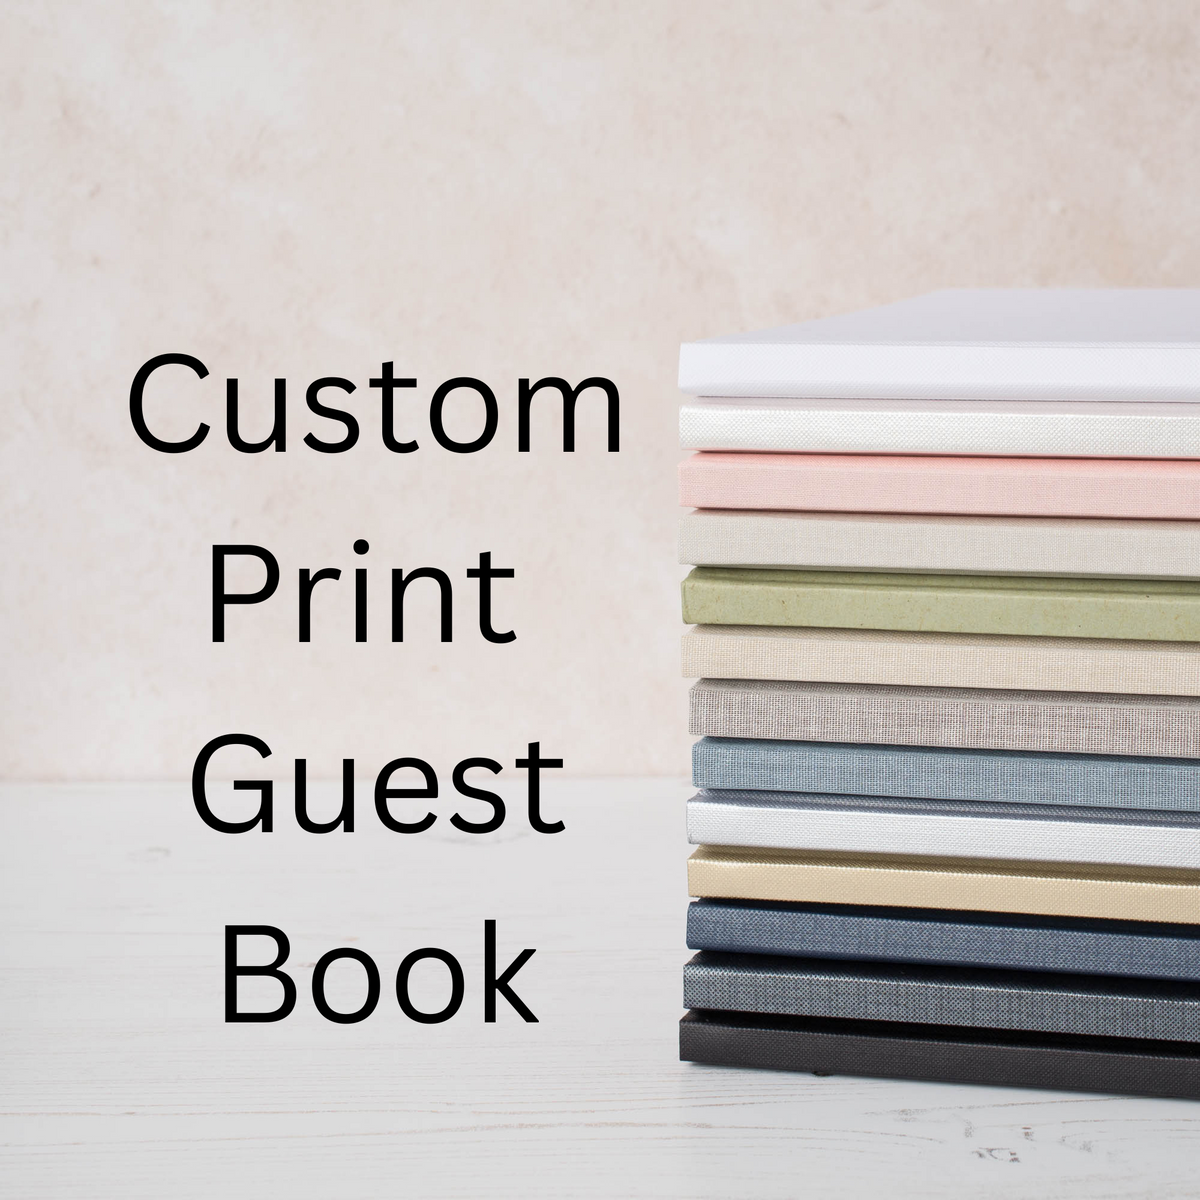 Custom print Guest Book